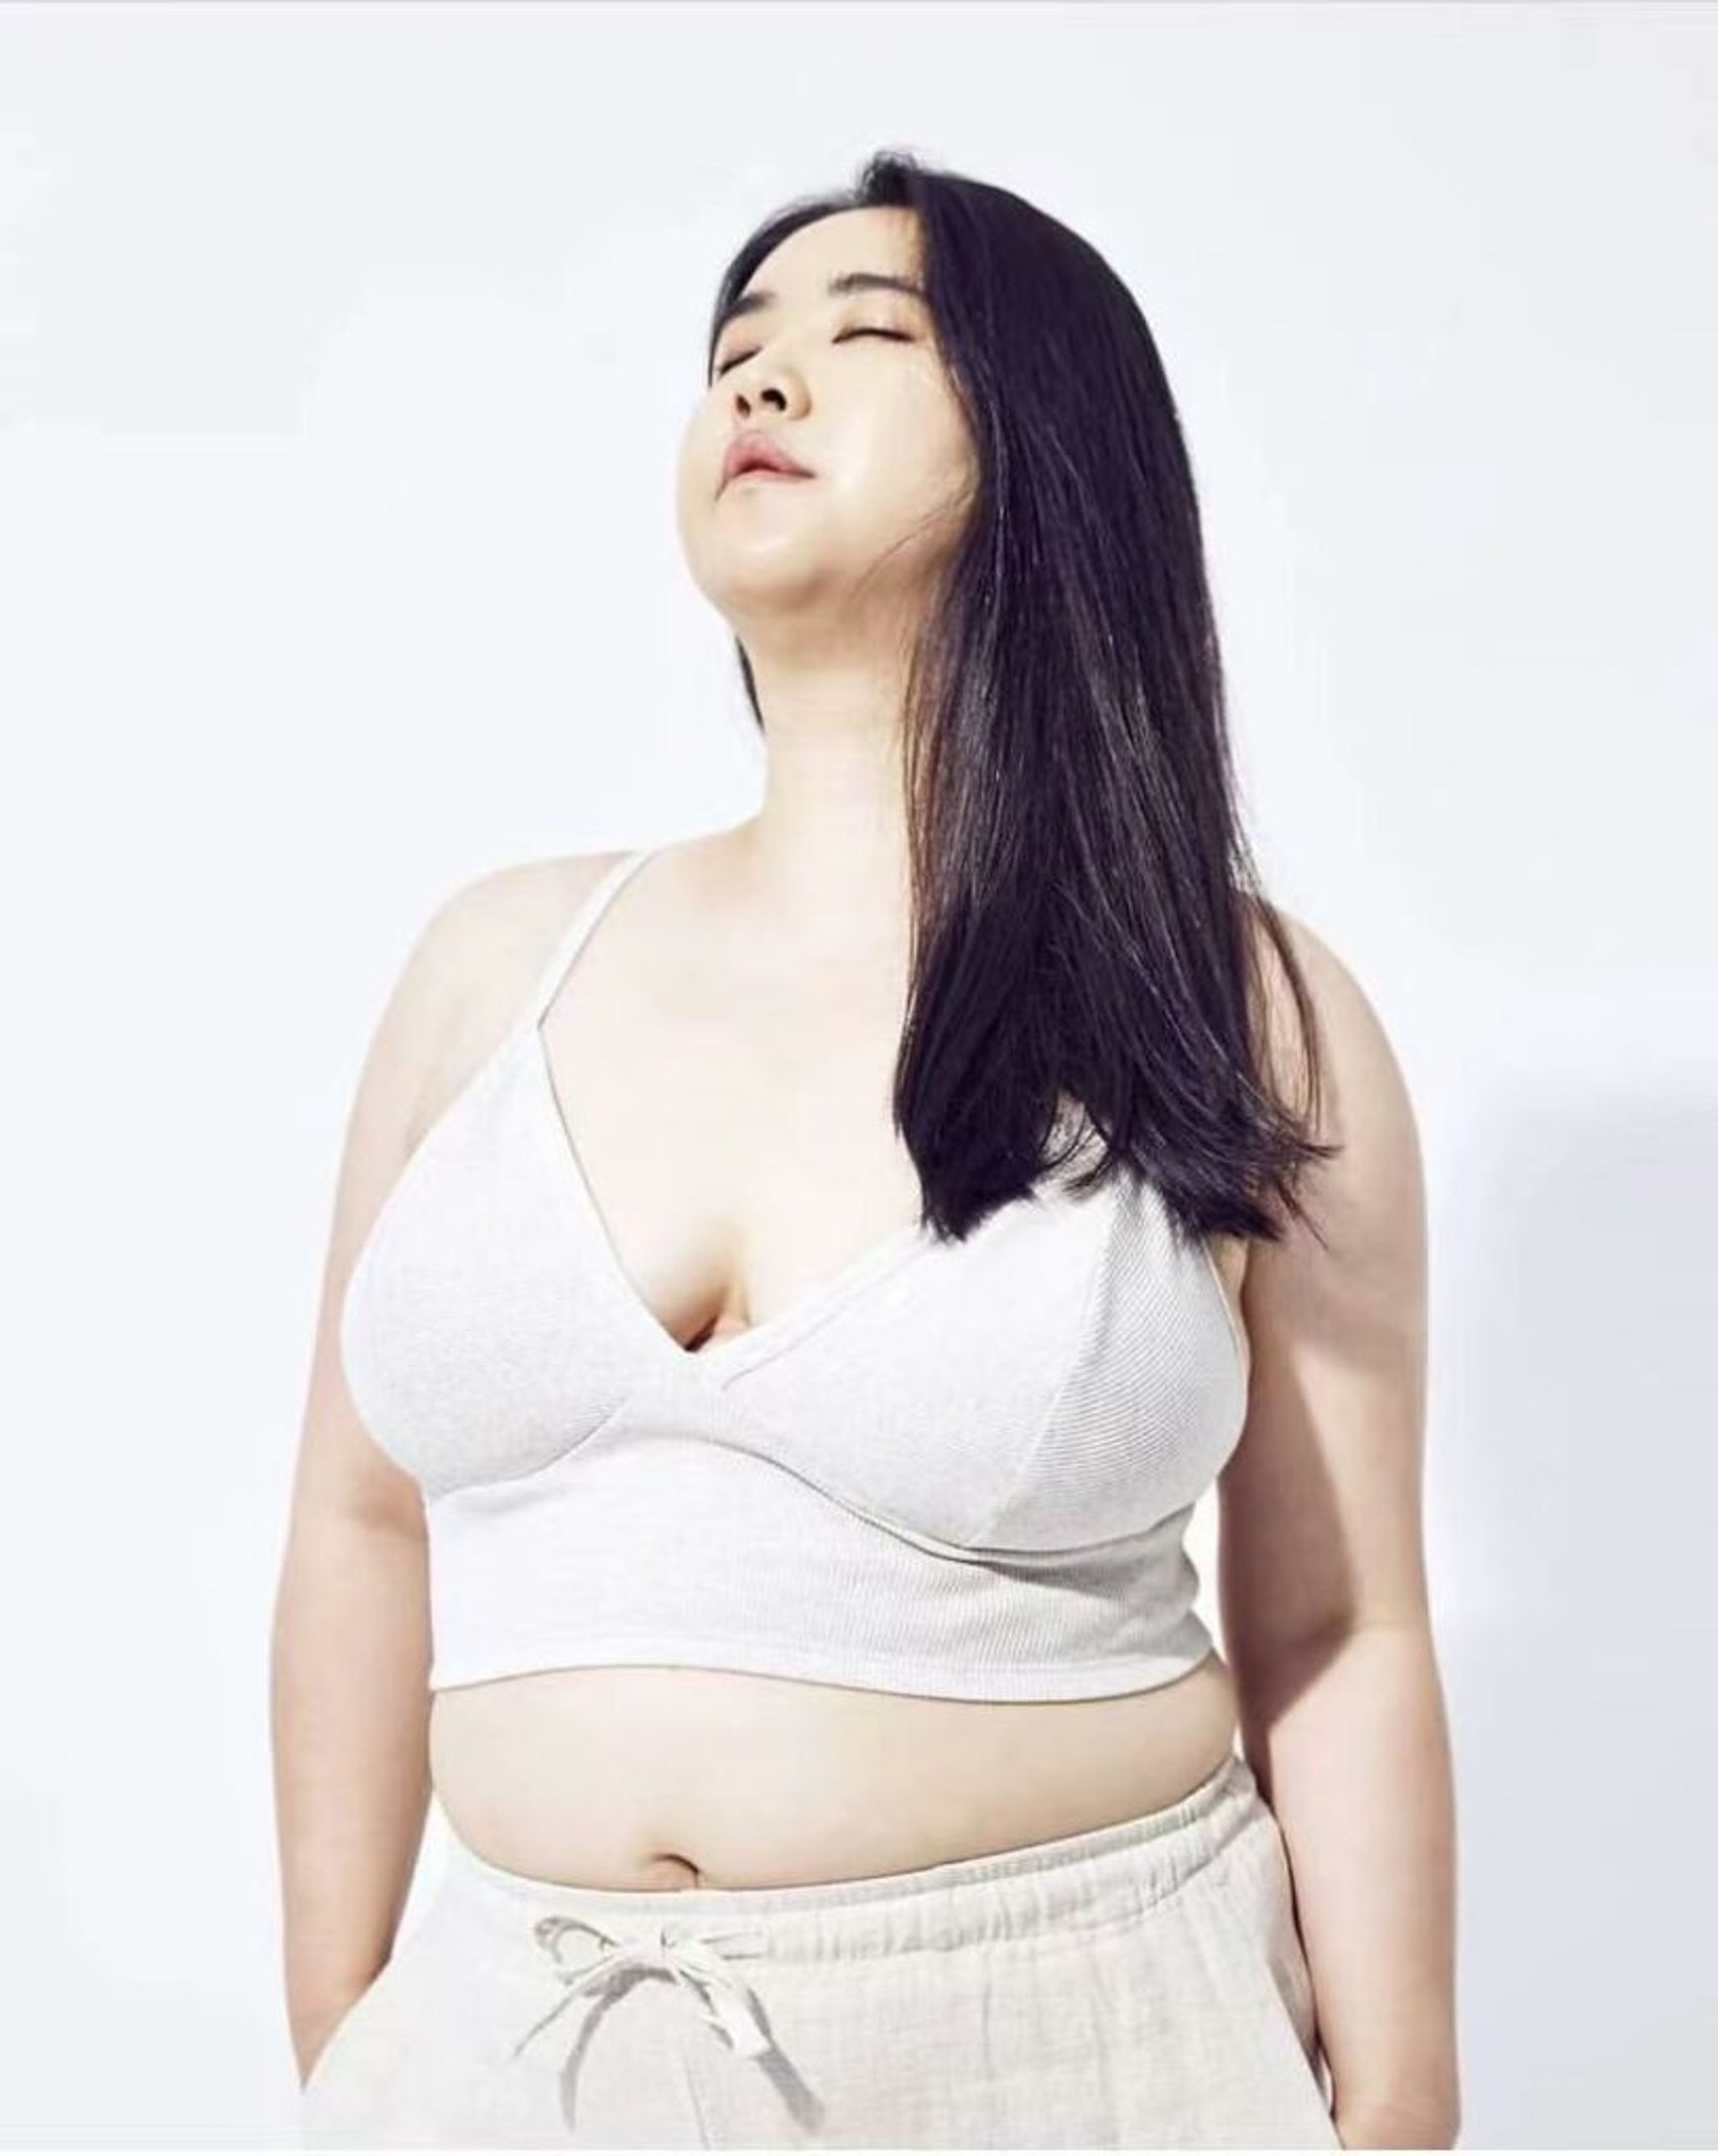 beautiful curvy model kim gee yang